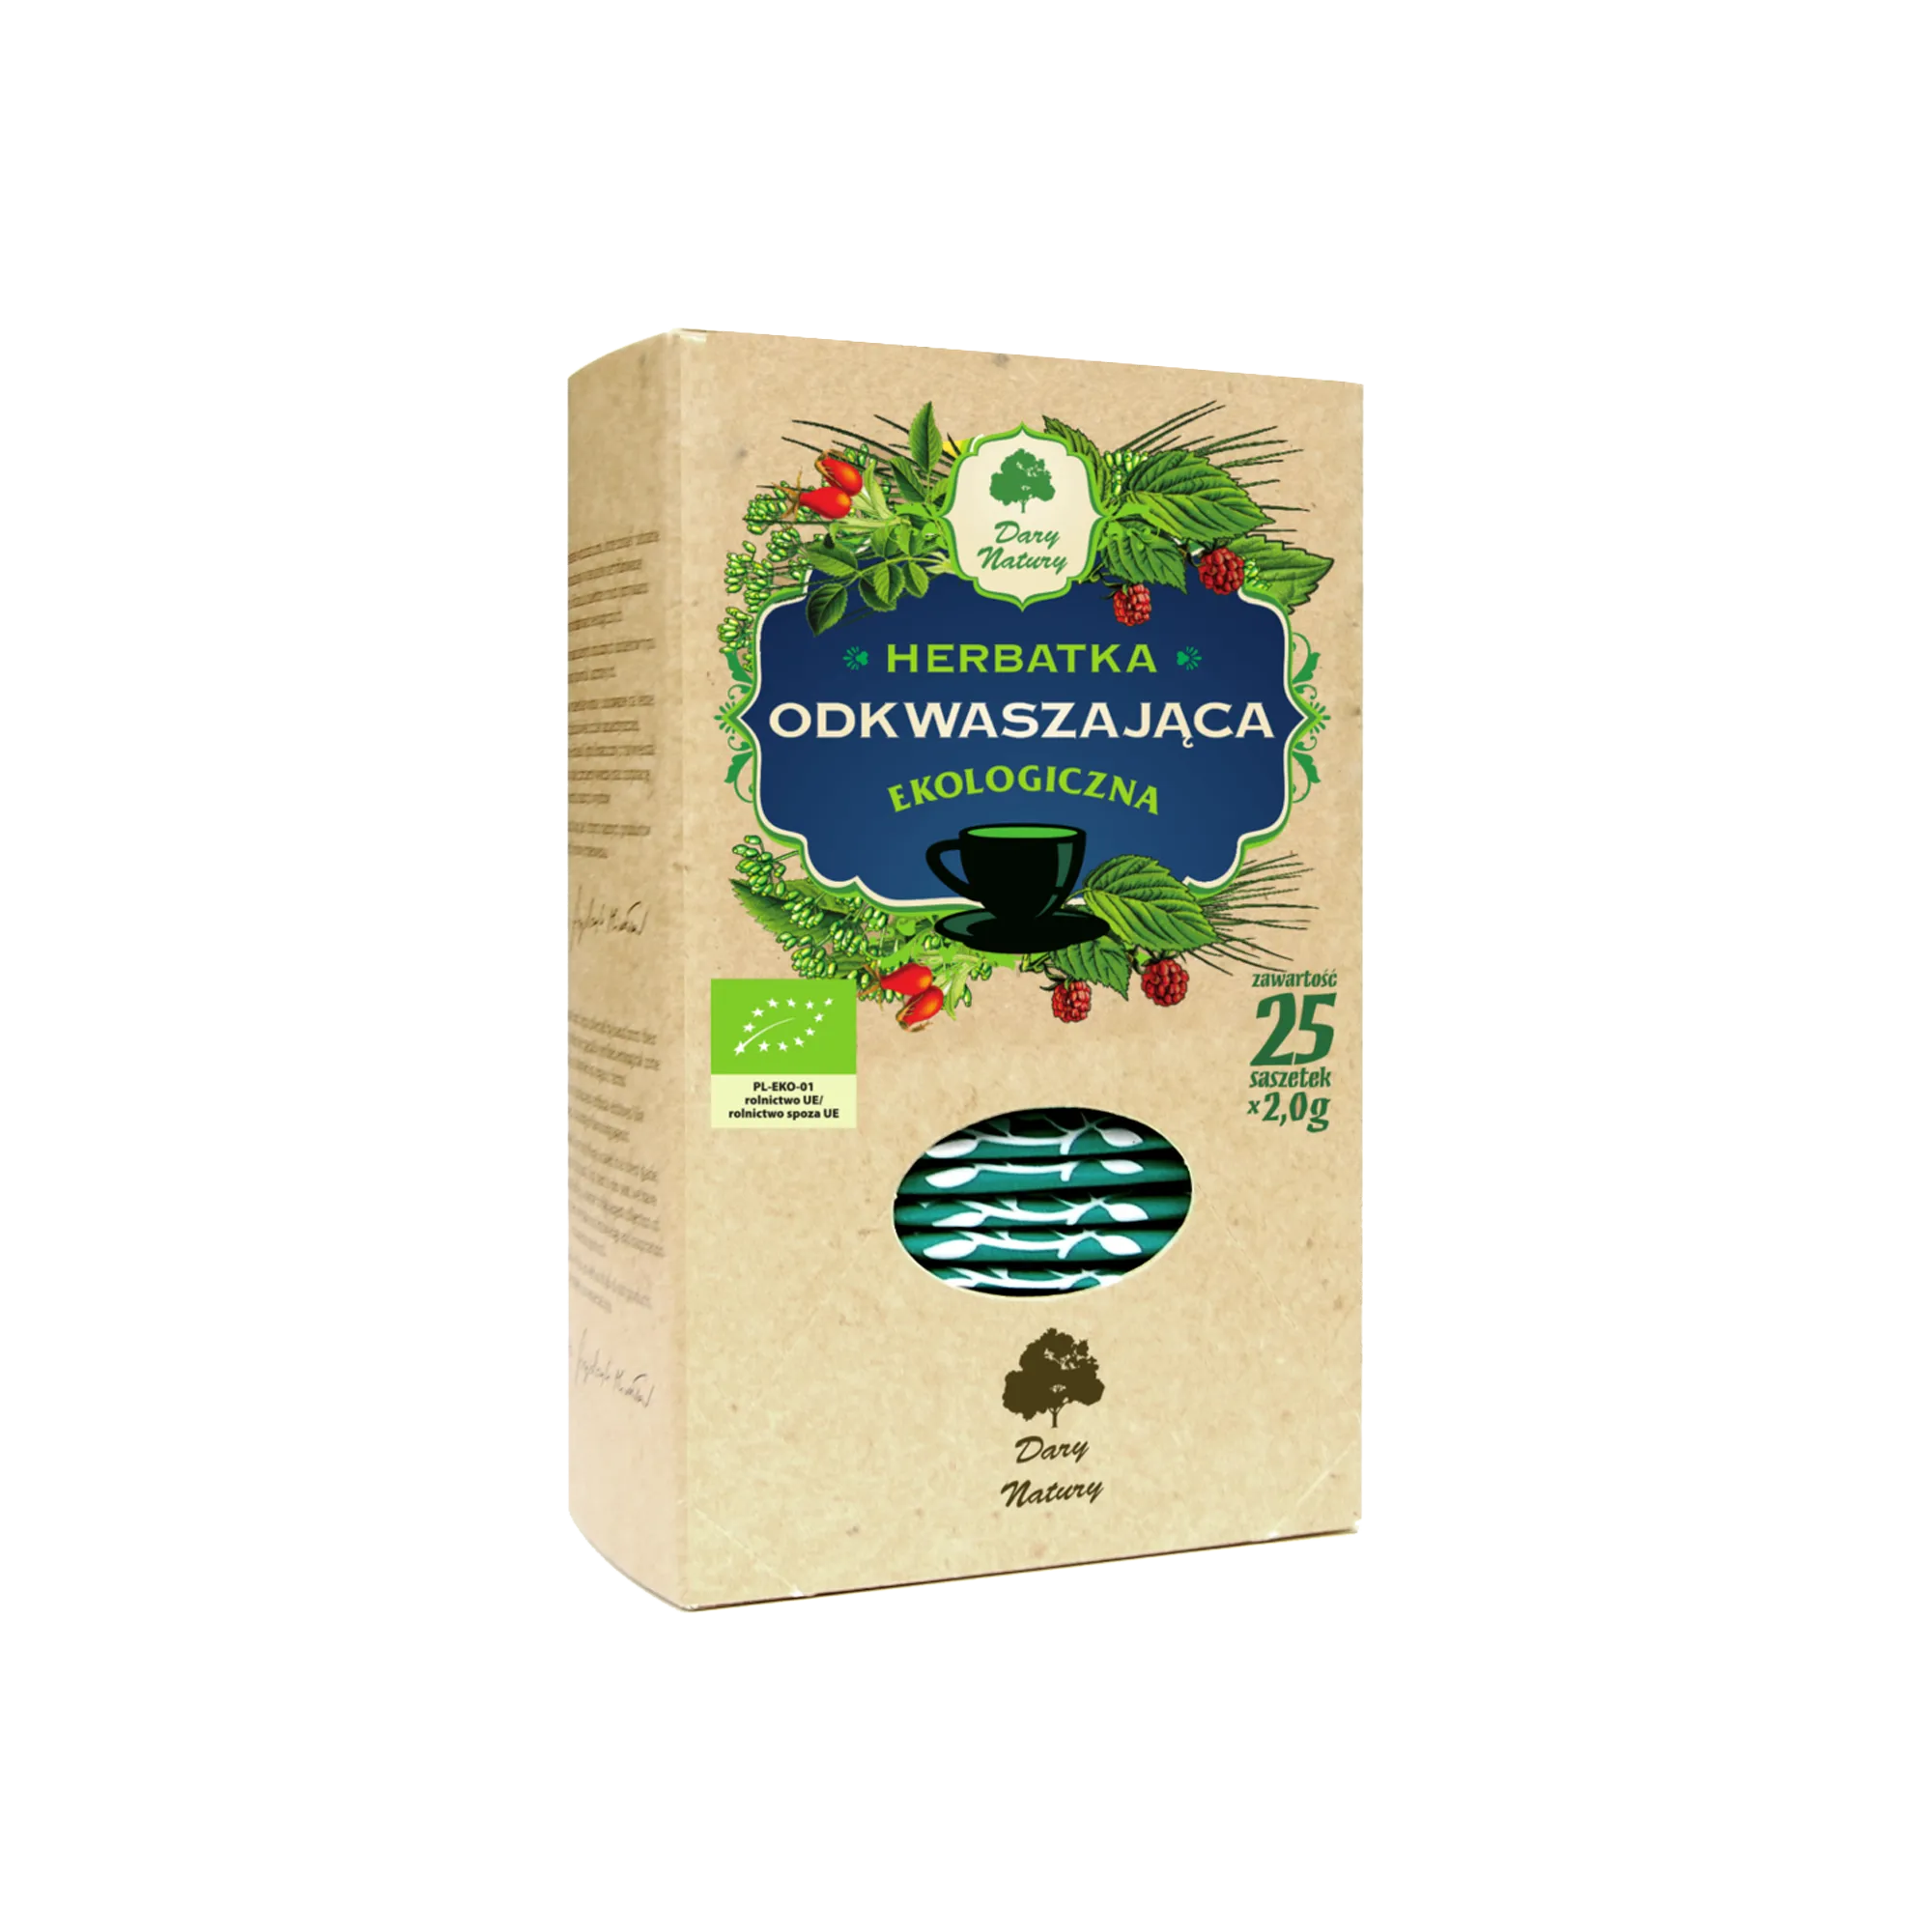 Dary Natury BIO Ekologiczna herbatka odkwaszająca, 2 x 25 g